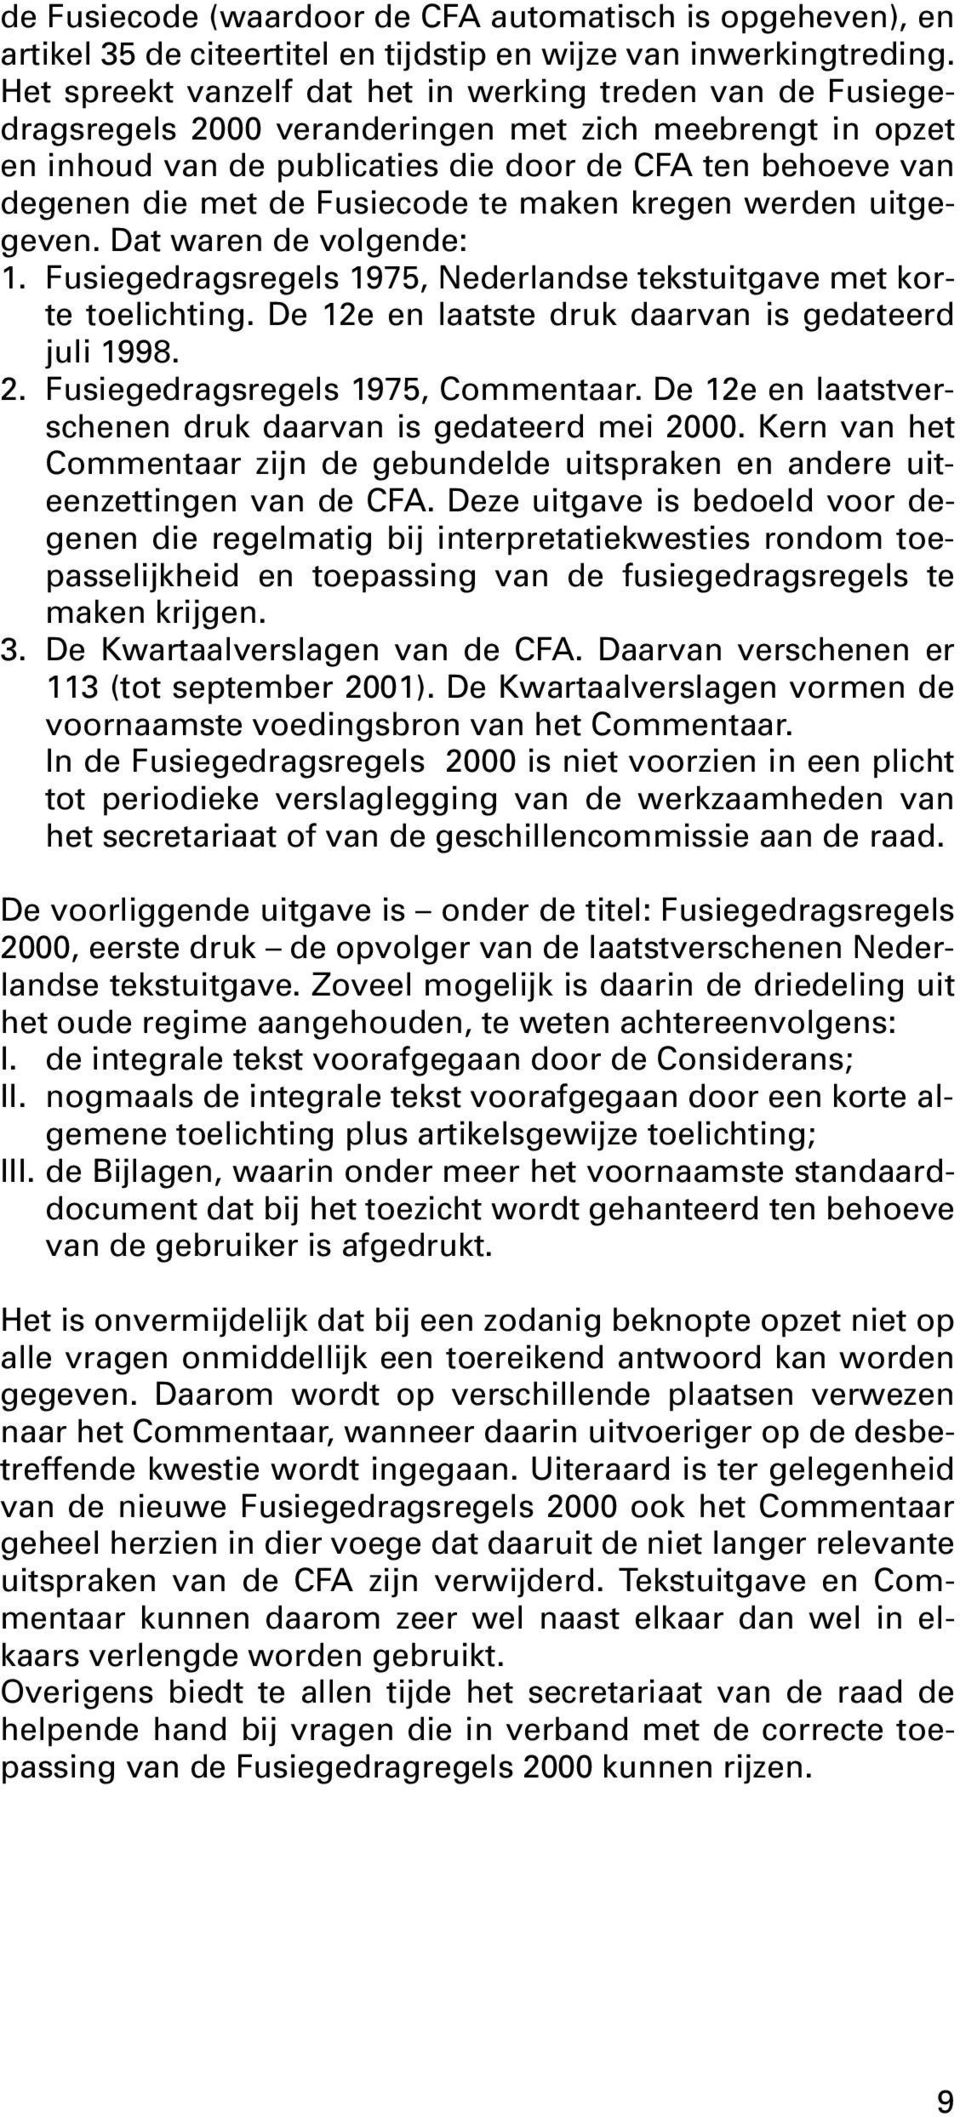 Fusiecode te maken kregen werden uitgegeven. Dat waren de volgende: 1. Fusiegedragsregels 1975, Nederlandse tekstuitgave met korte toelichting. De 12e en laatste druk daarvan is gedateerd juli 1998.